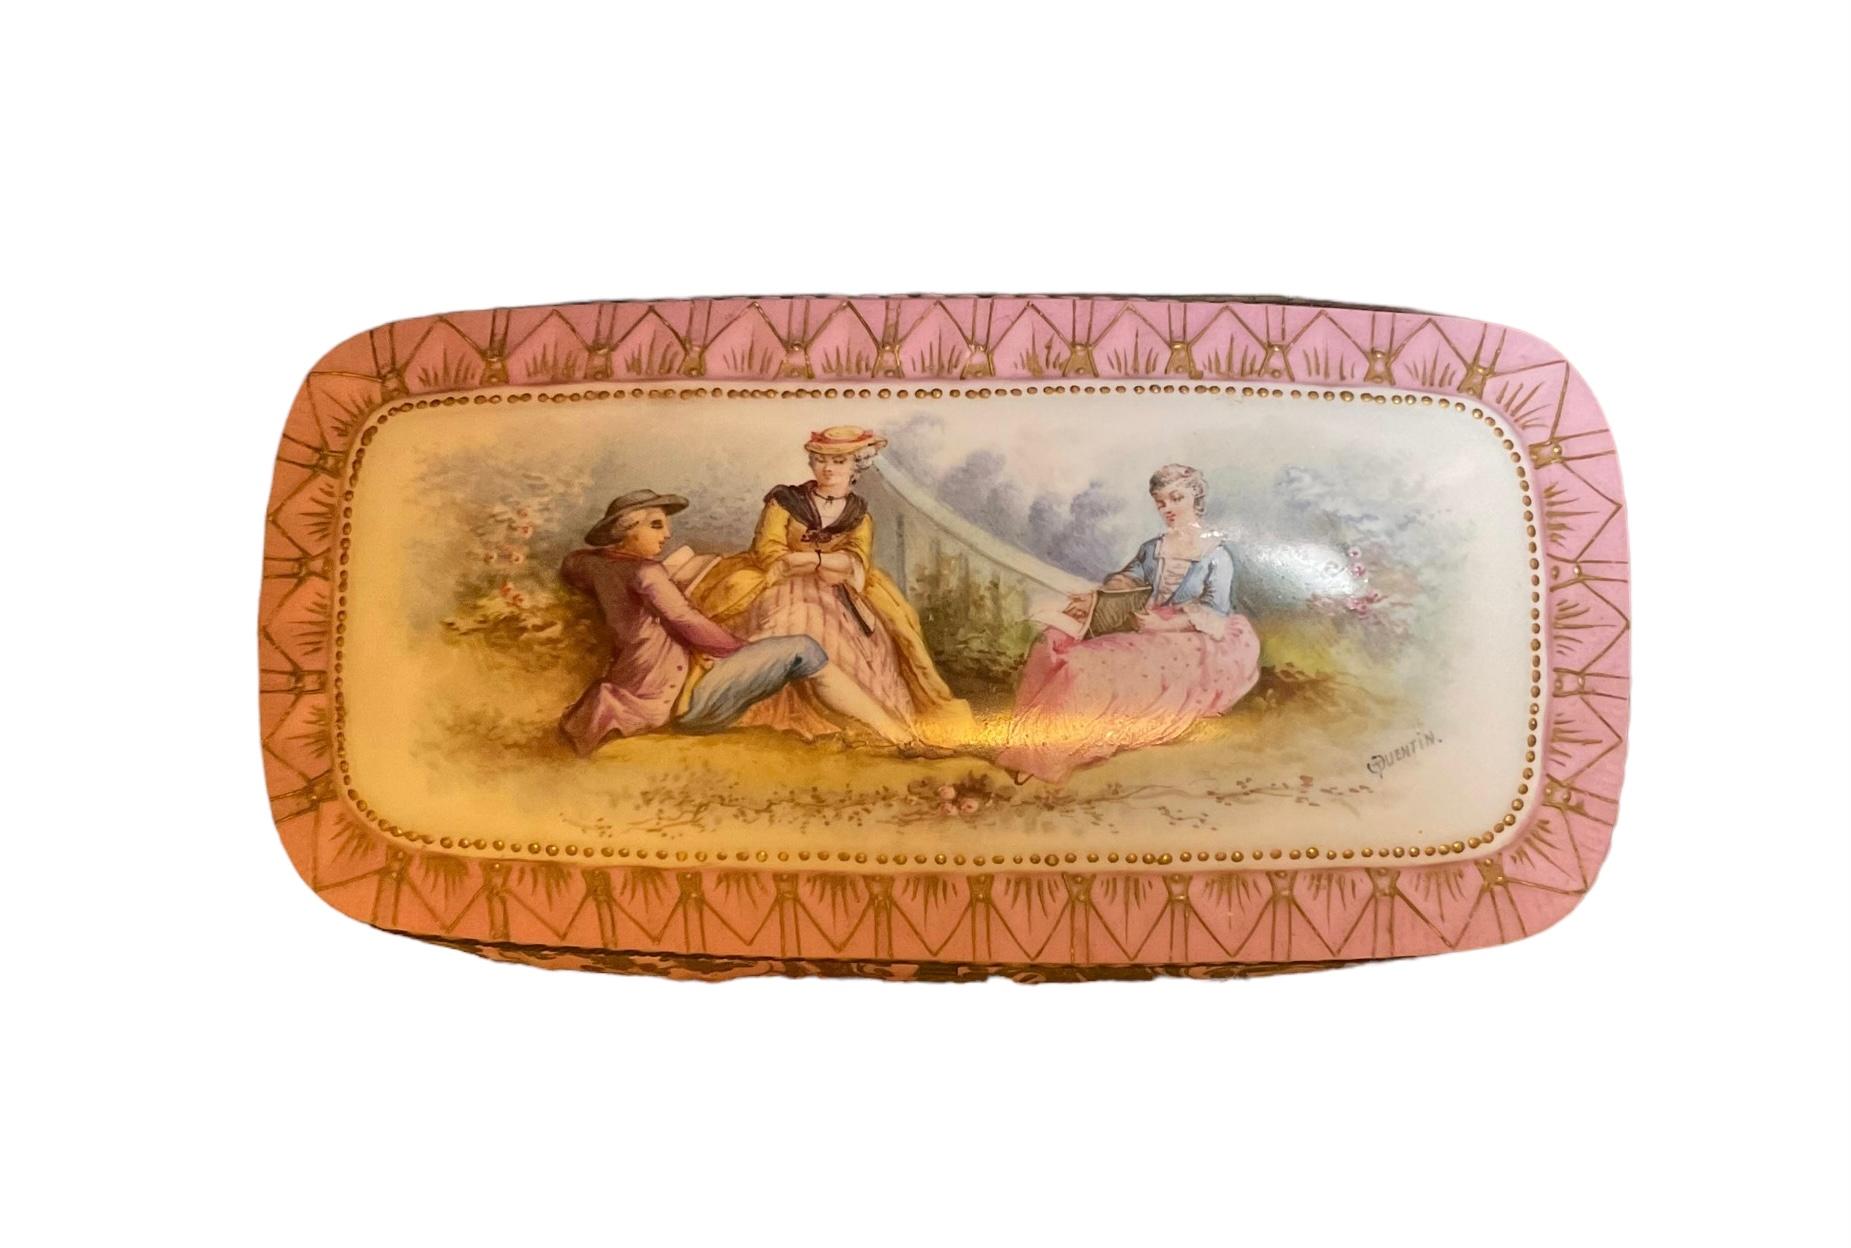 Hand-Painted Chateau De Tuileries Porcelain Rectangular Casket For Sale